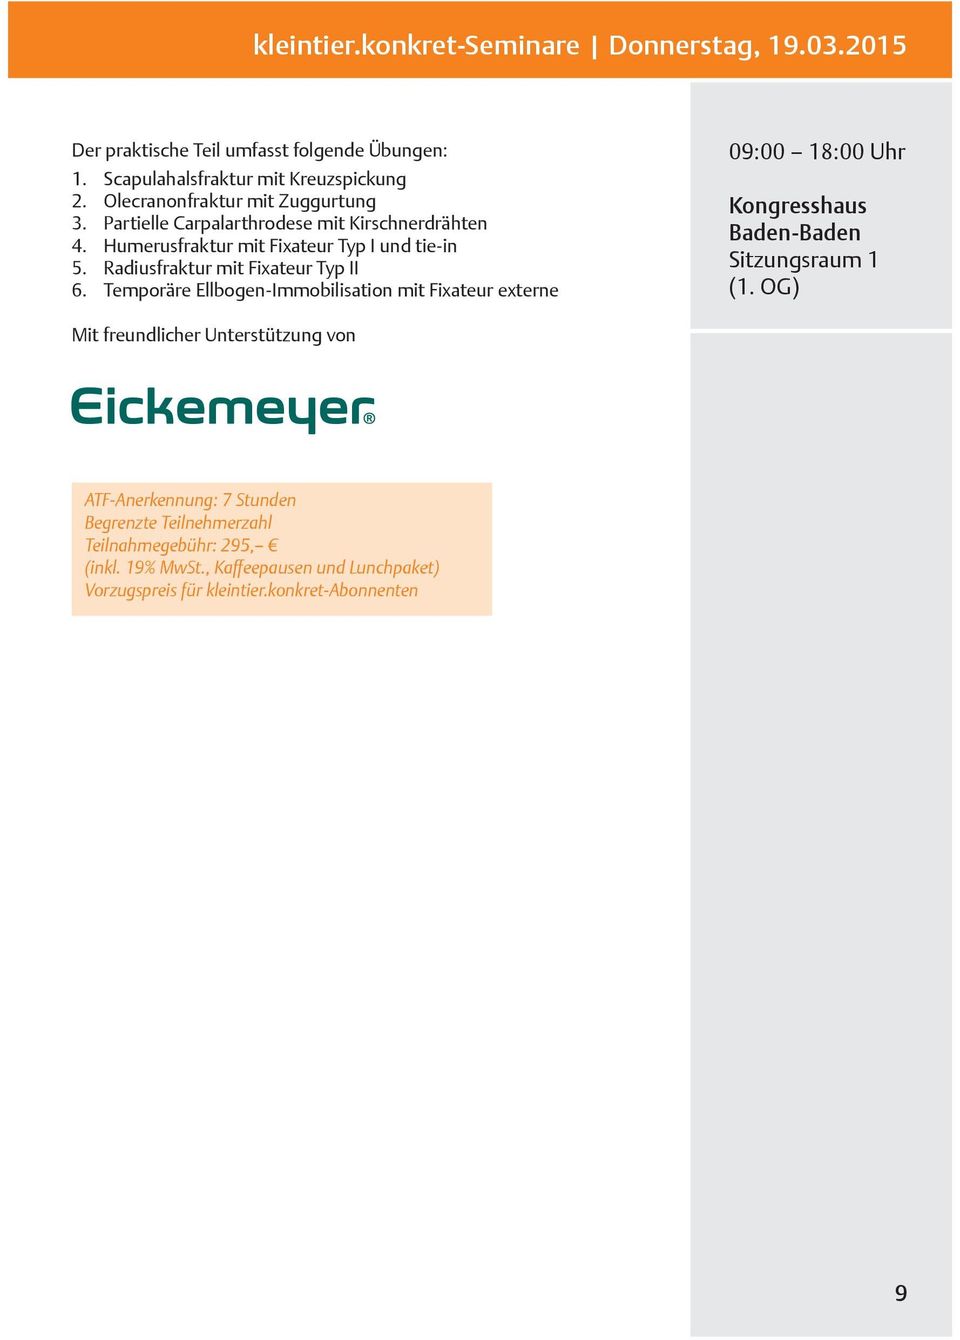 Radiusfraktur mit Fixateur Typ II 6. Temporäre Ellbogen-Immobilisation mit Fixateur externe 09:00 18:00 Uhr Kongresshaus Baden-Baden Sitzungsraum 1 (1.